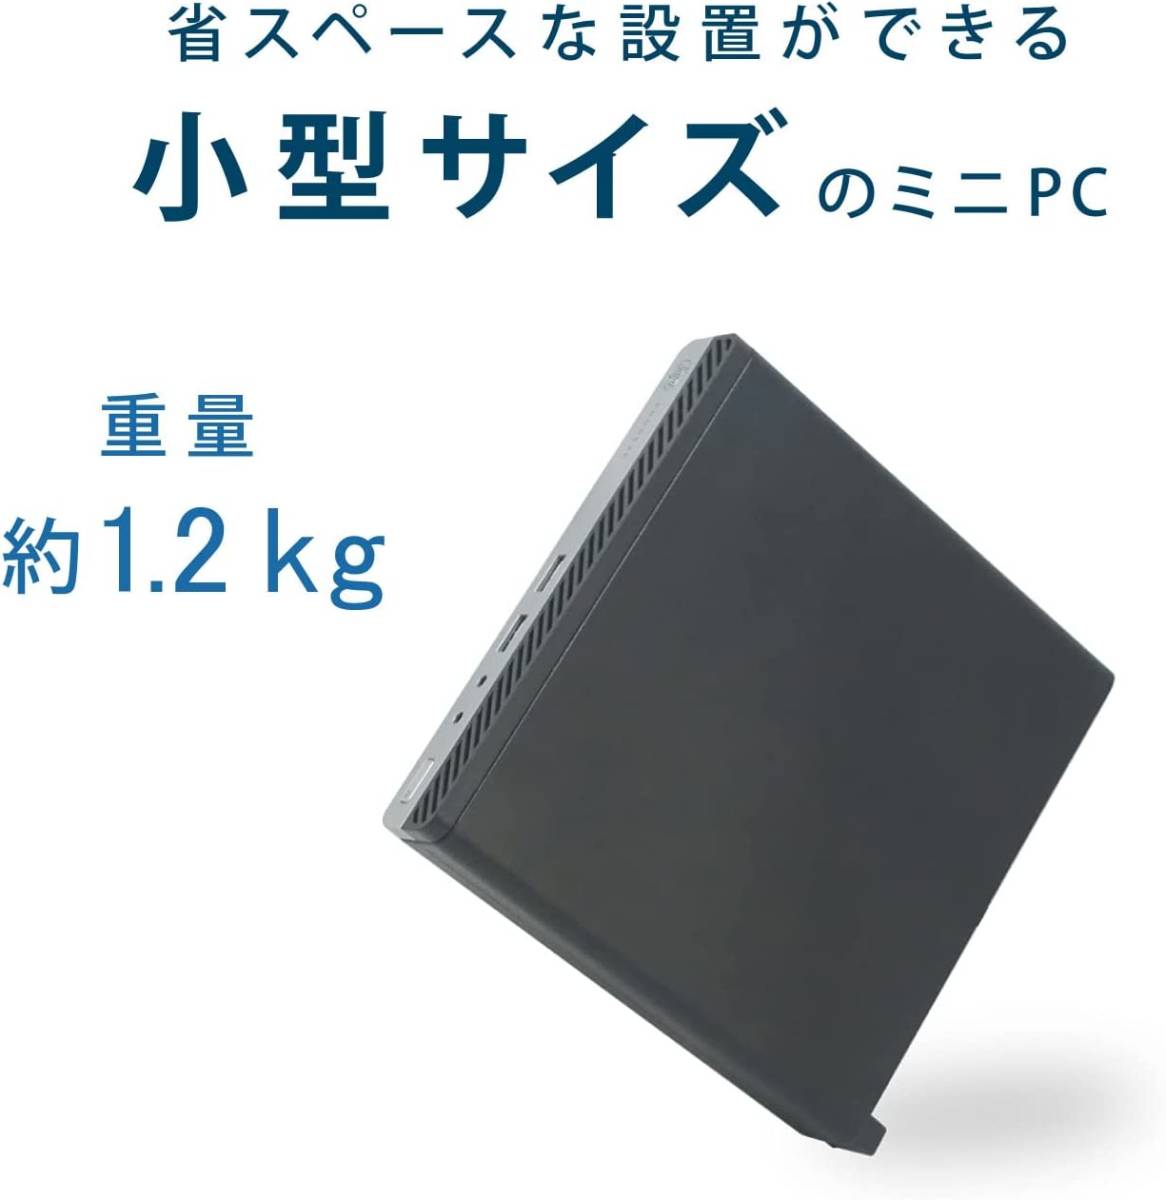 第六世代ミニ型中古パソコン 超小型HP ProDesk 400 G3 Celeron G3900T Microsoft Office2021メモリ4GB HDD500GB Windows 11 USB3.0_画像3